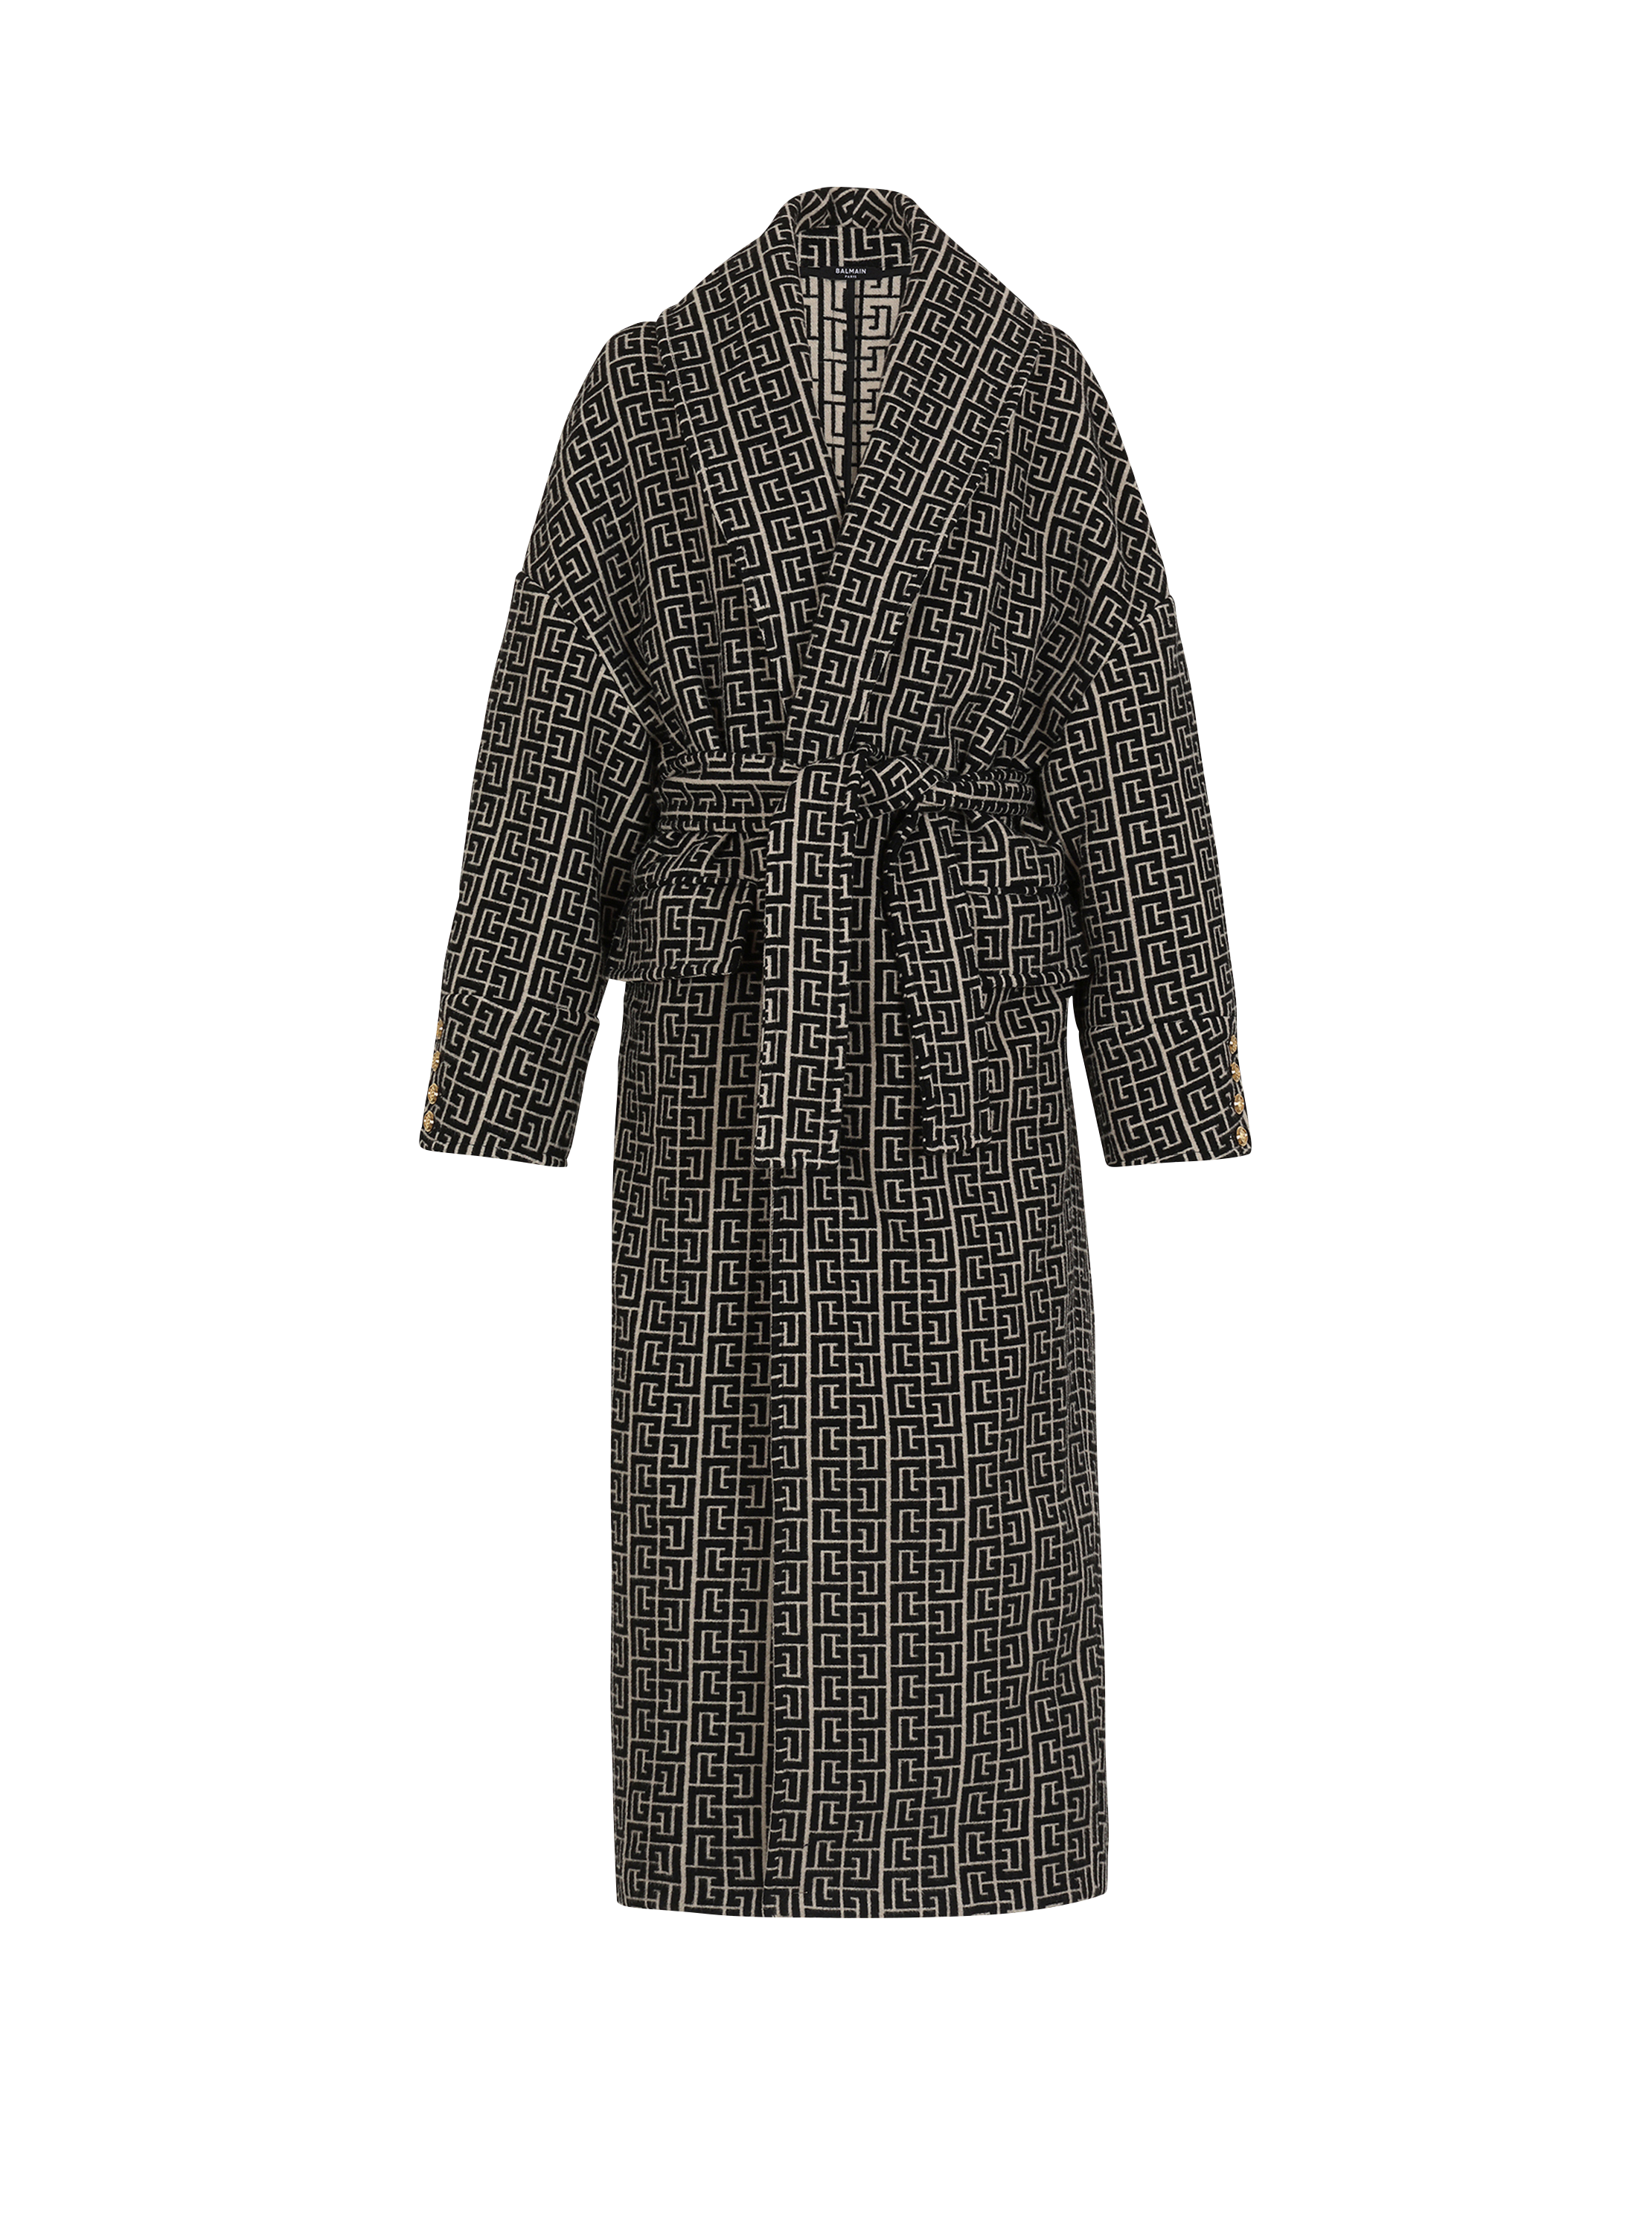 Balmain print monogram wool coat